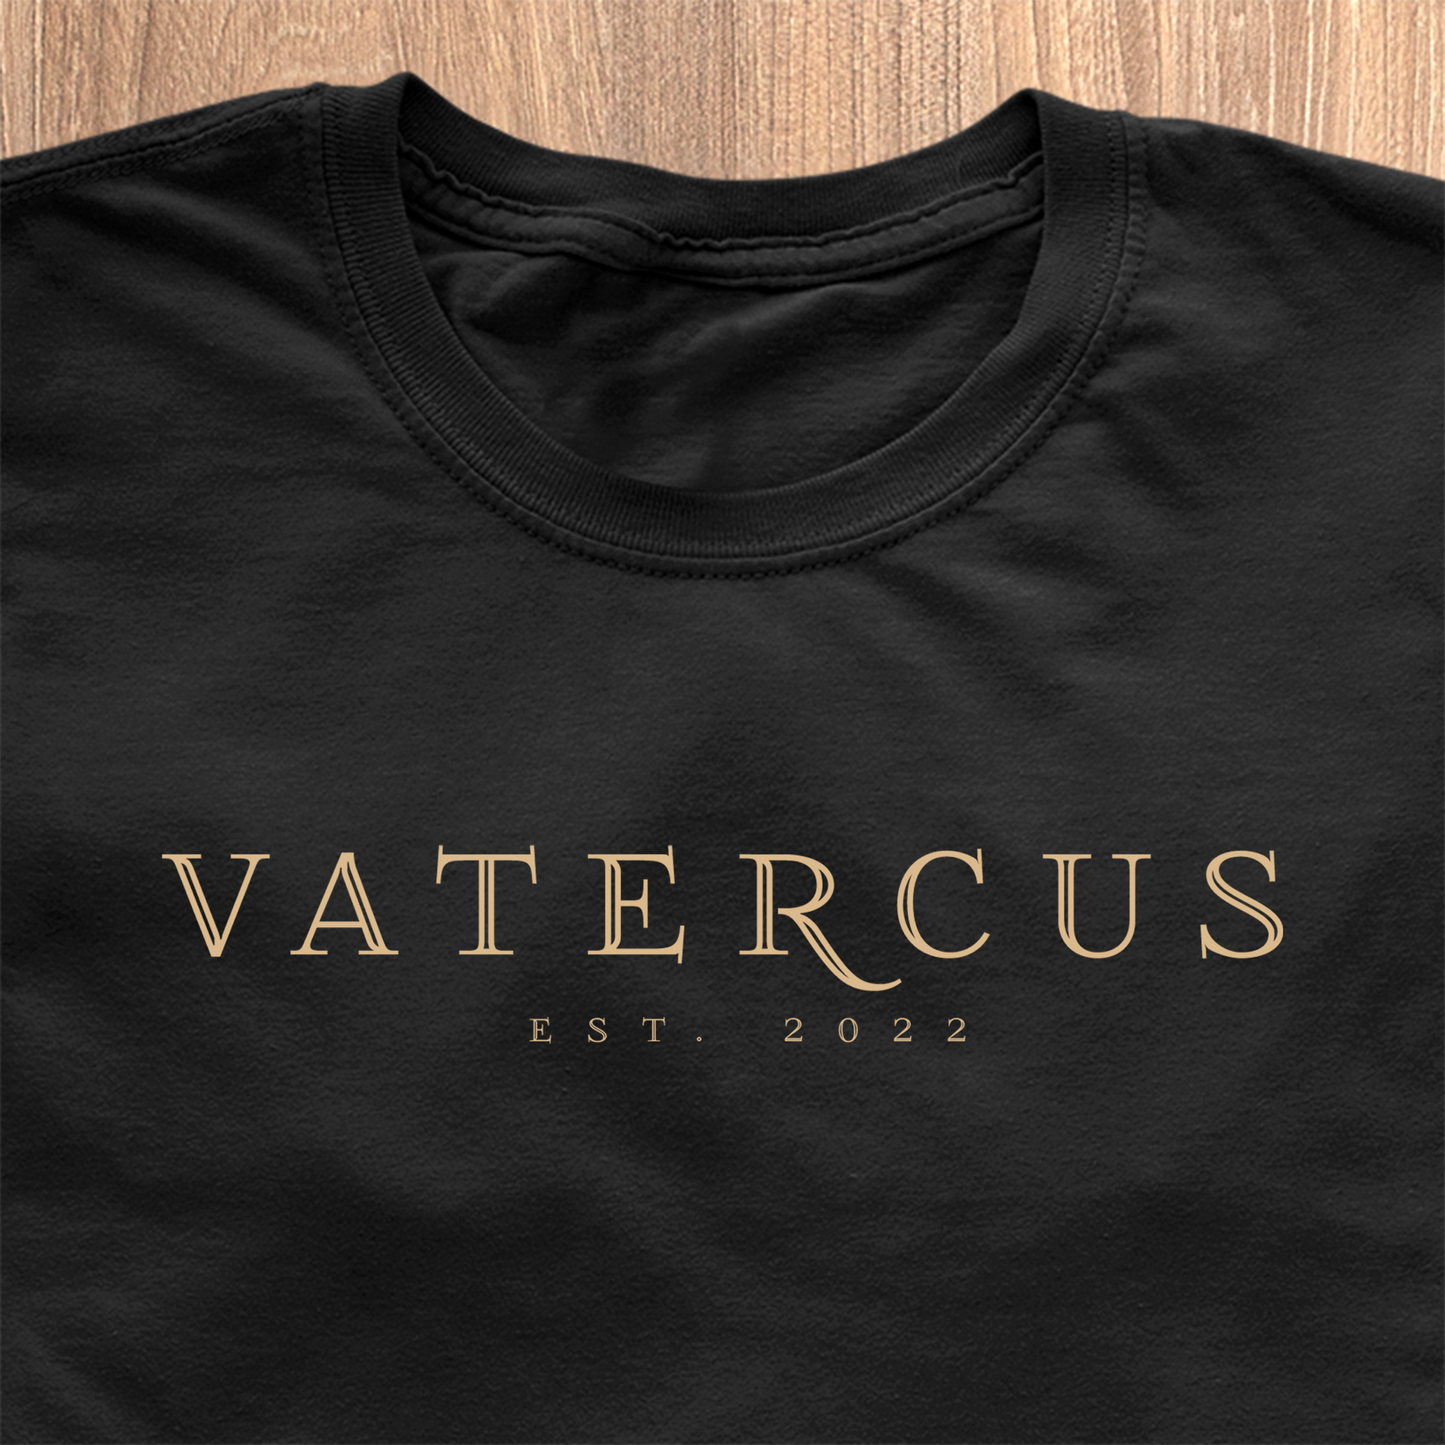 Vatercus T-Shirt - Datum personaliséierbar